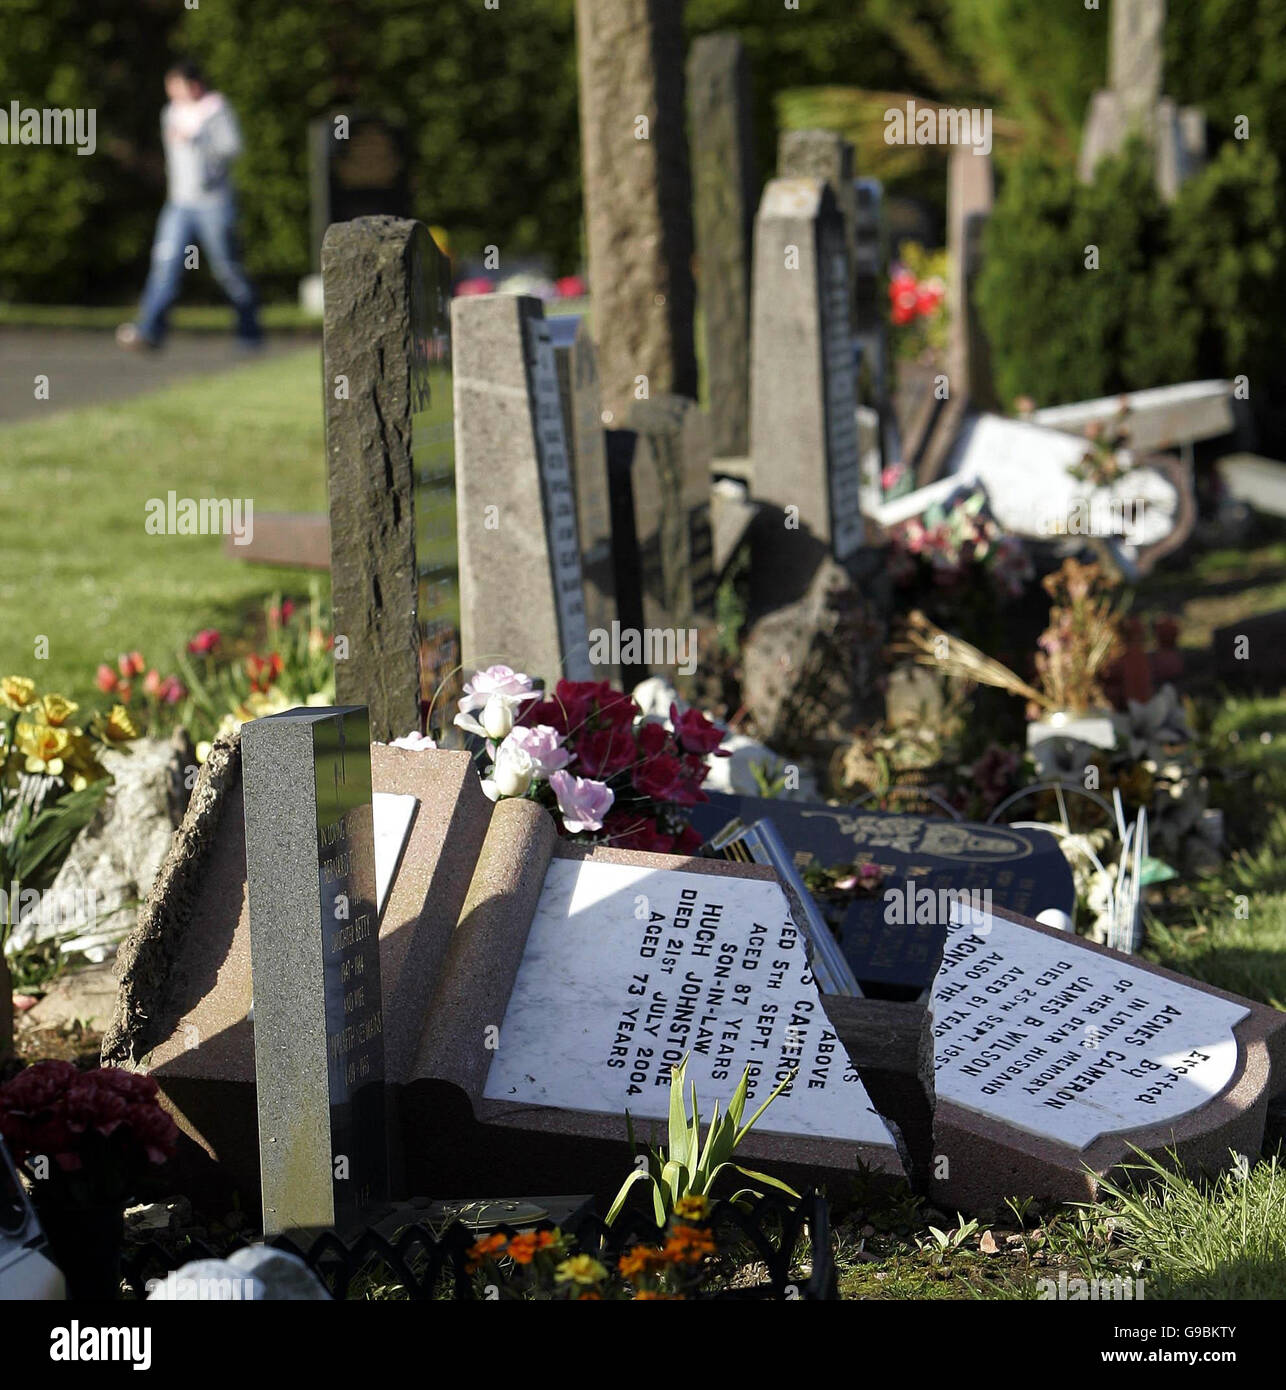 Grabsteine wurden bei einer nächtlichen Vandalismusveranstaltung auf dem Friedhof von Fauldhouse in Fauldhouse, West Lothian, umgeschlagen und beschädigt. Die Polizei brandmarkte das Verbrechen als „entsetzlich“ und sagte, dass es den Angehörigen der Vergrabenen große Not verursacht habe. Stockfoto